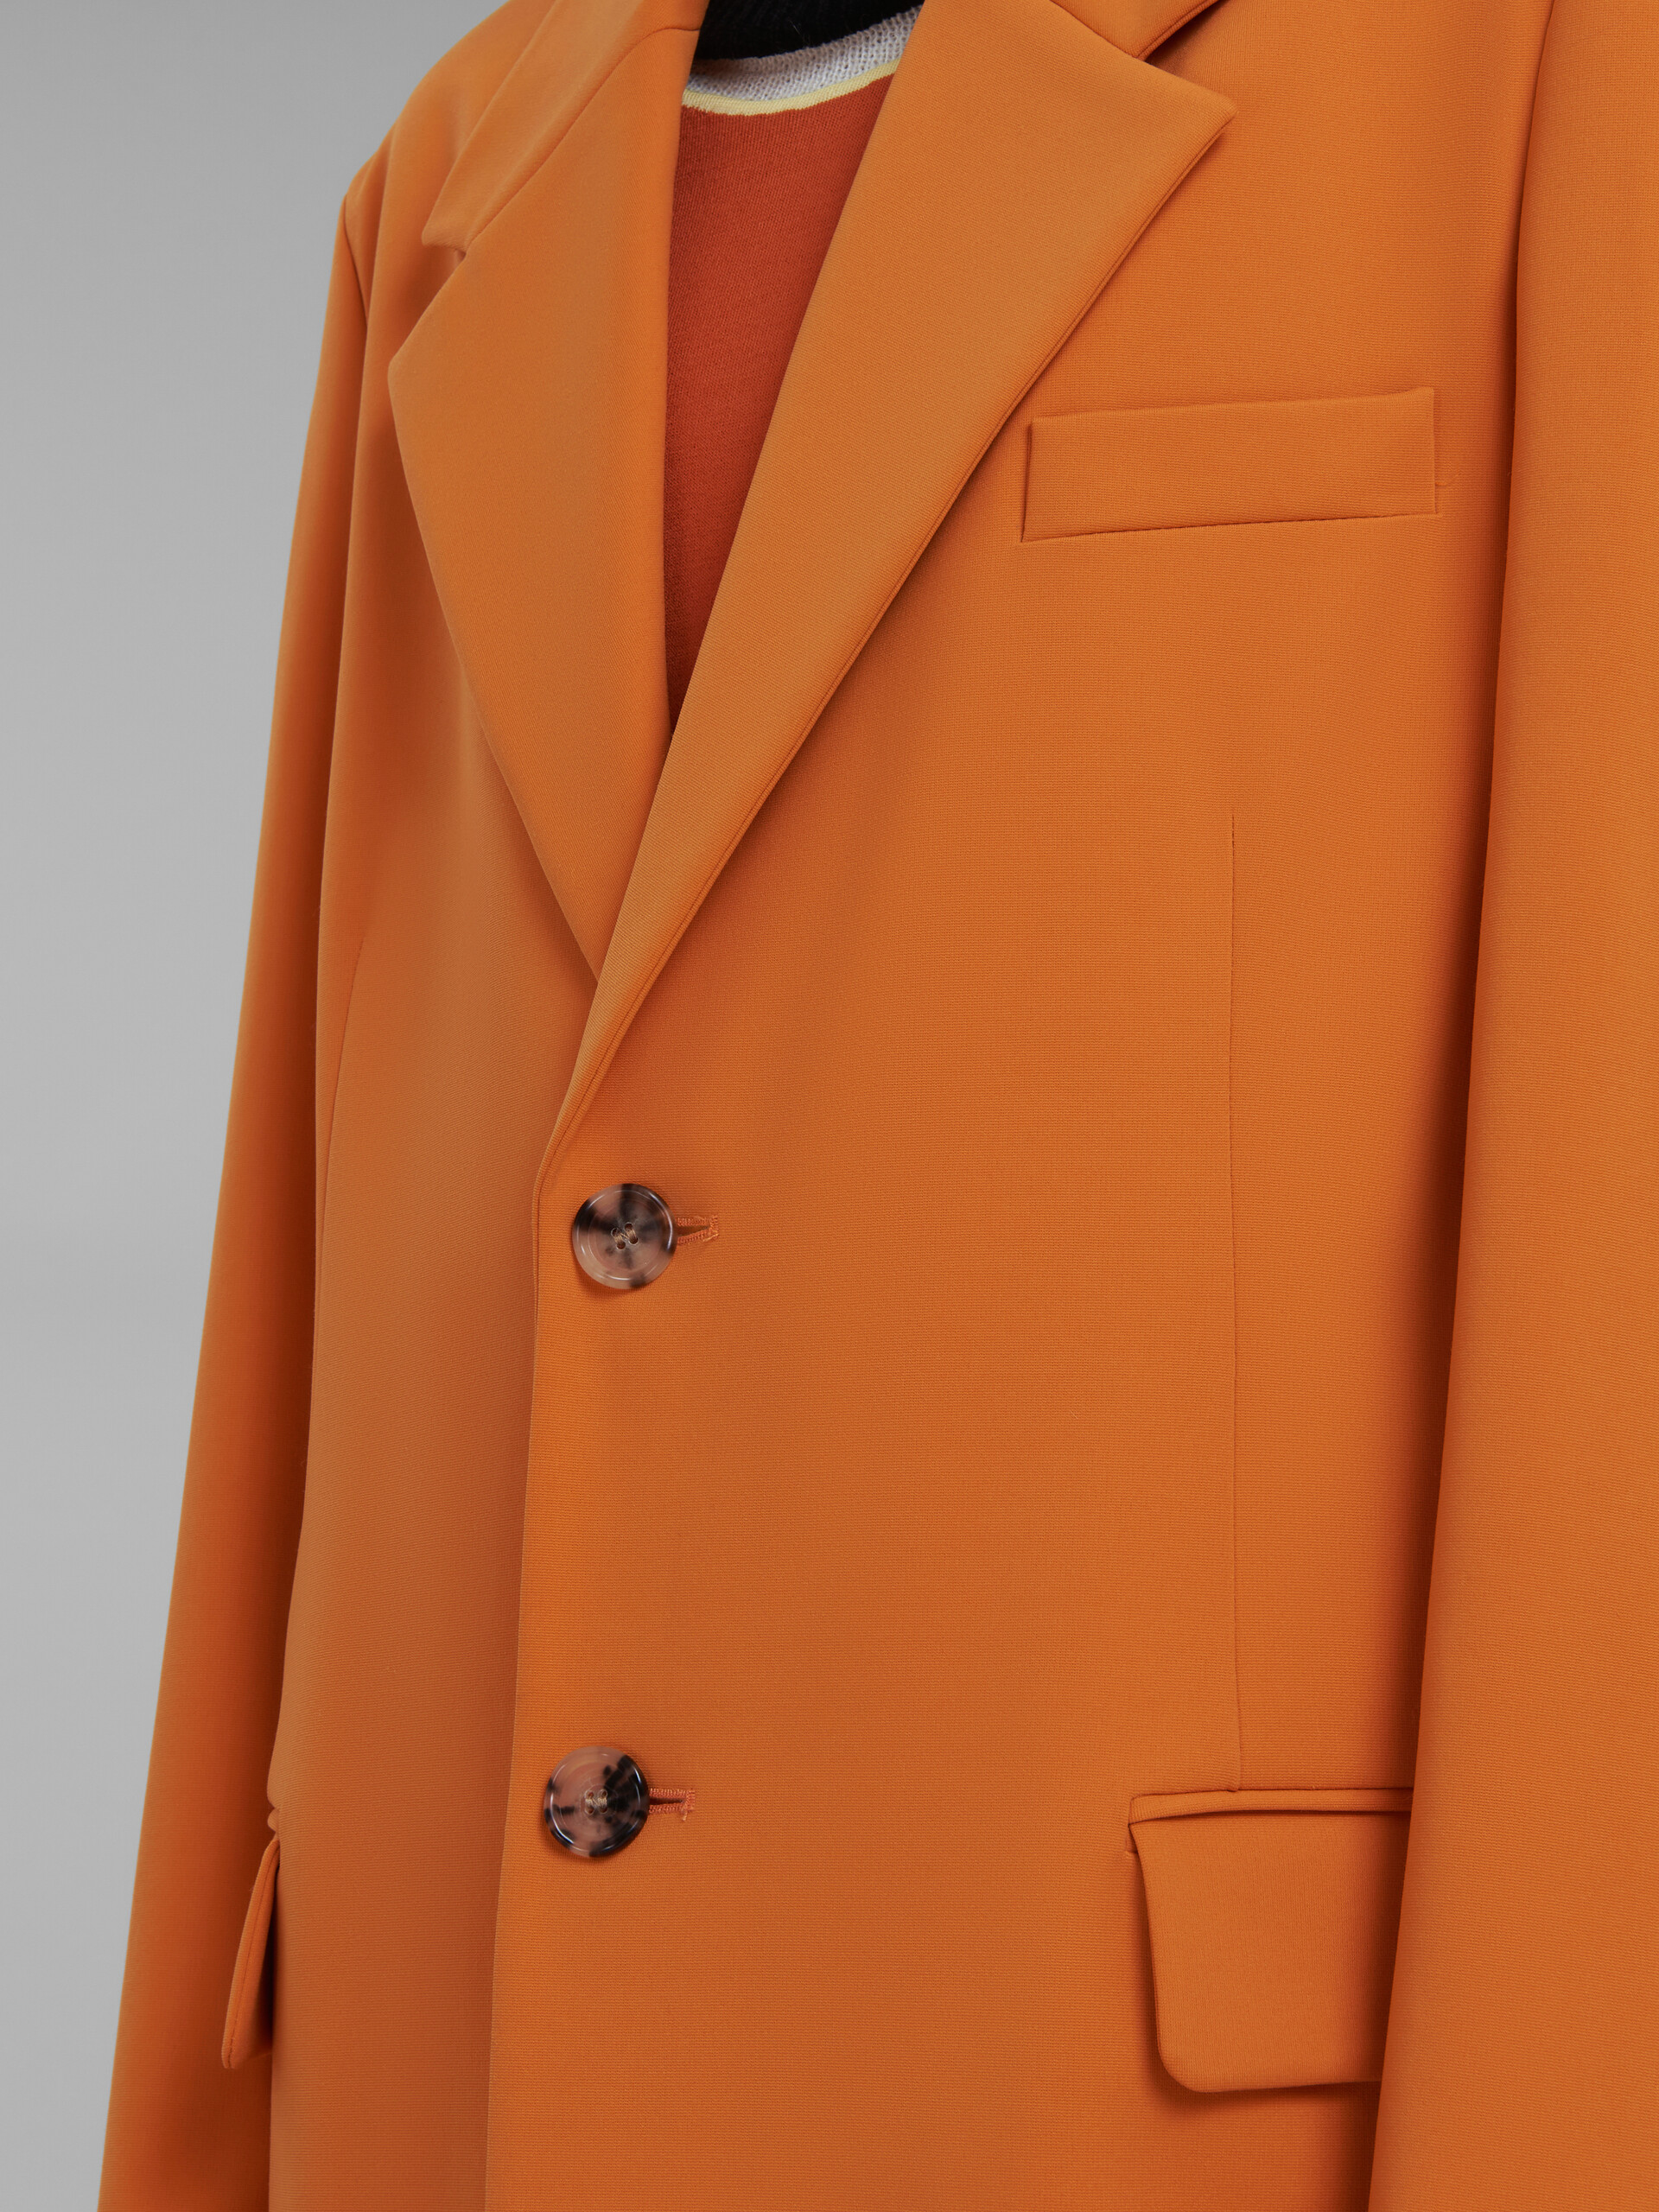 Orange single-breasted jersey coat - Coat - Image 5